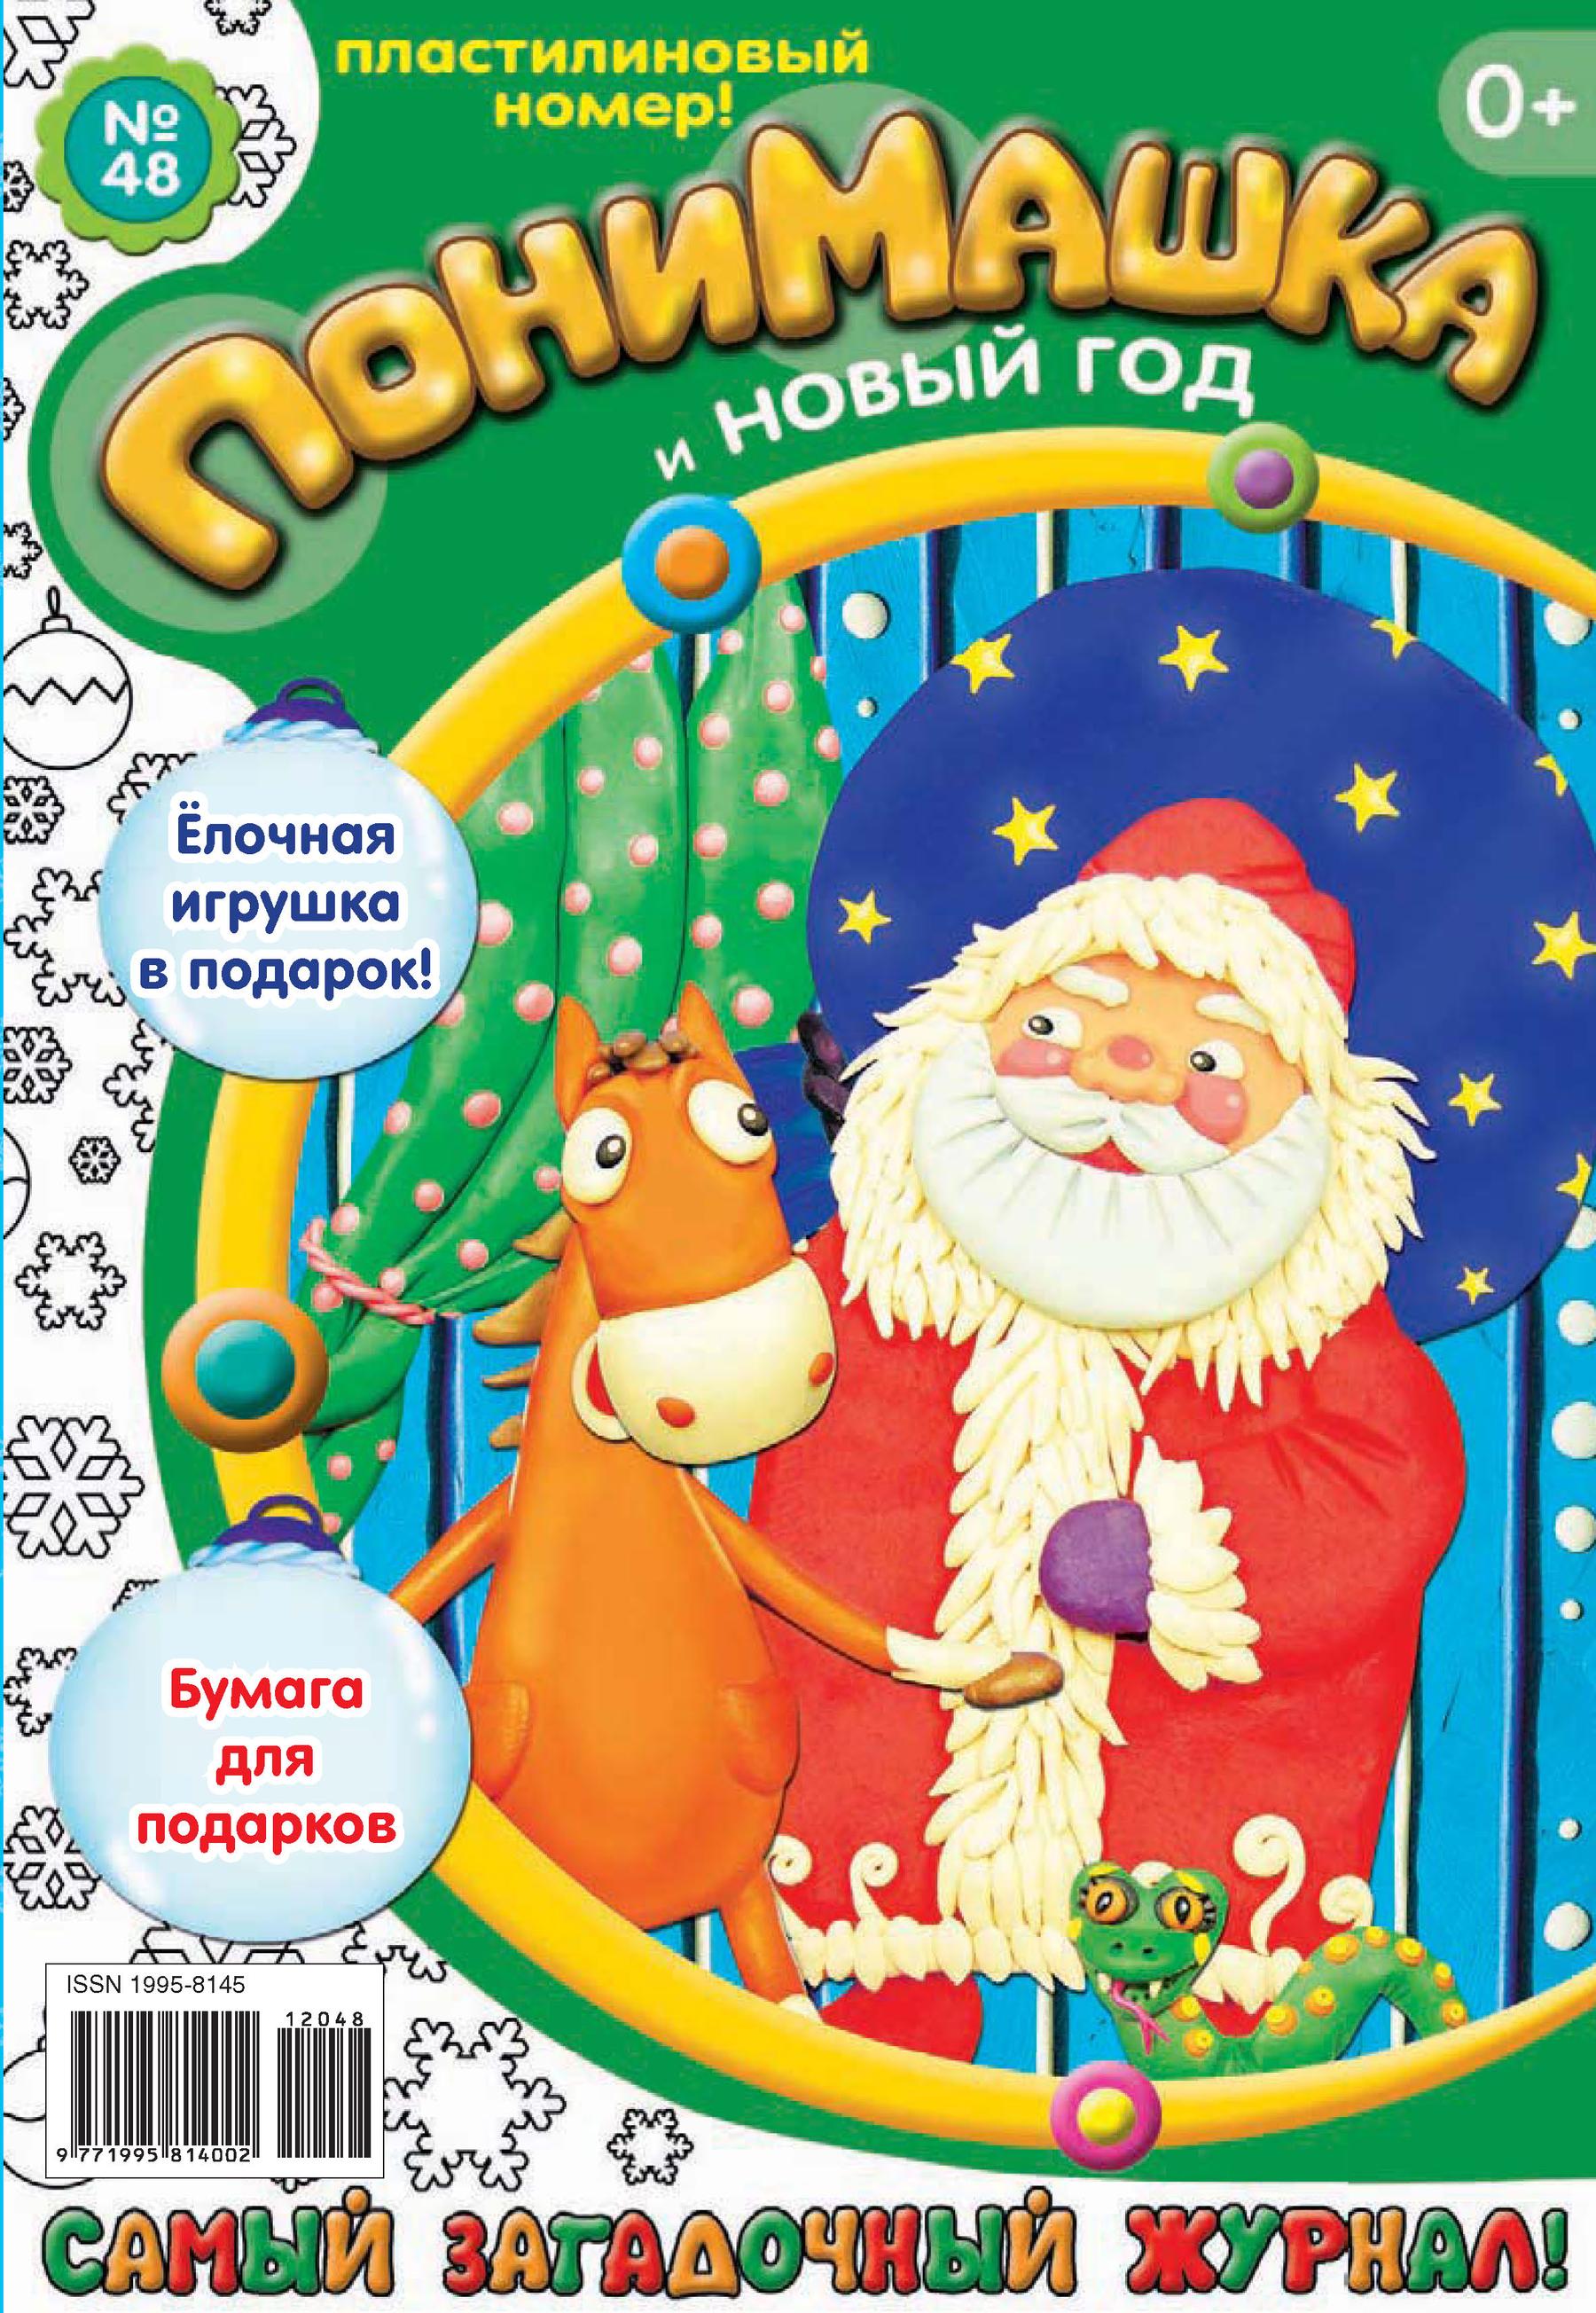 ПониМашка. Развлекательно-развивающий журнал. №48 (декабрь) 2012